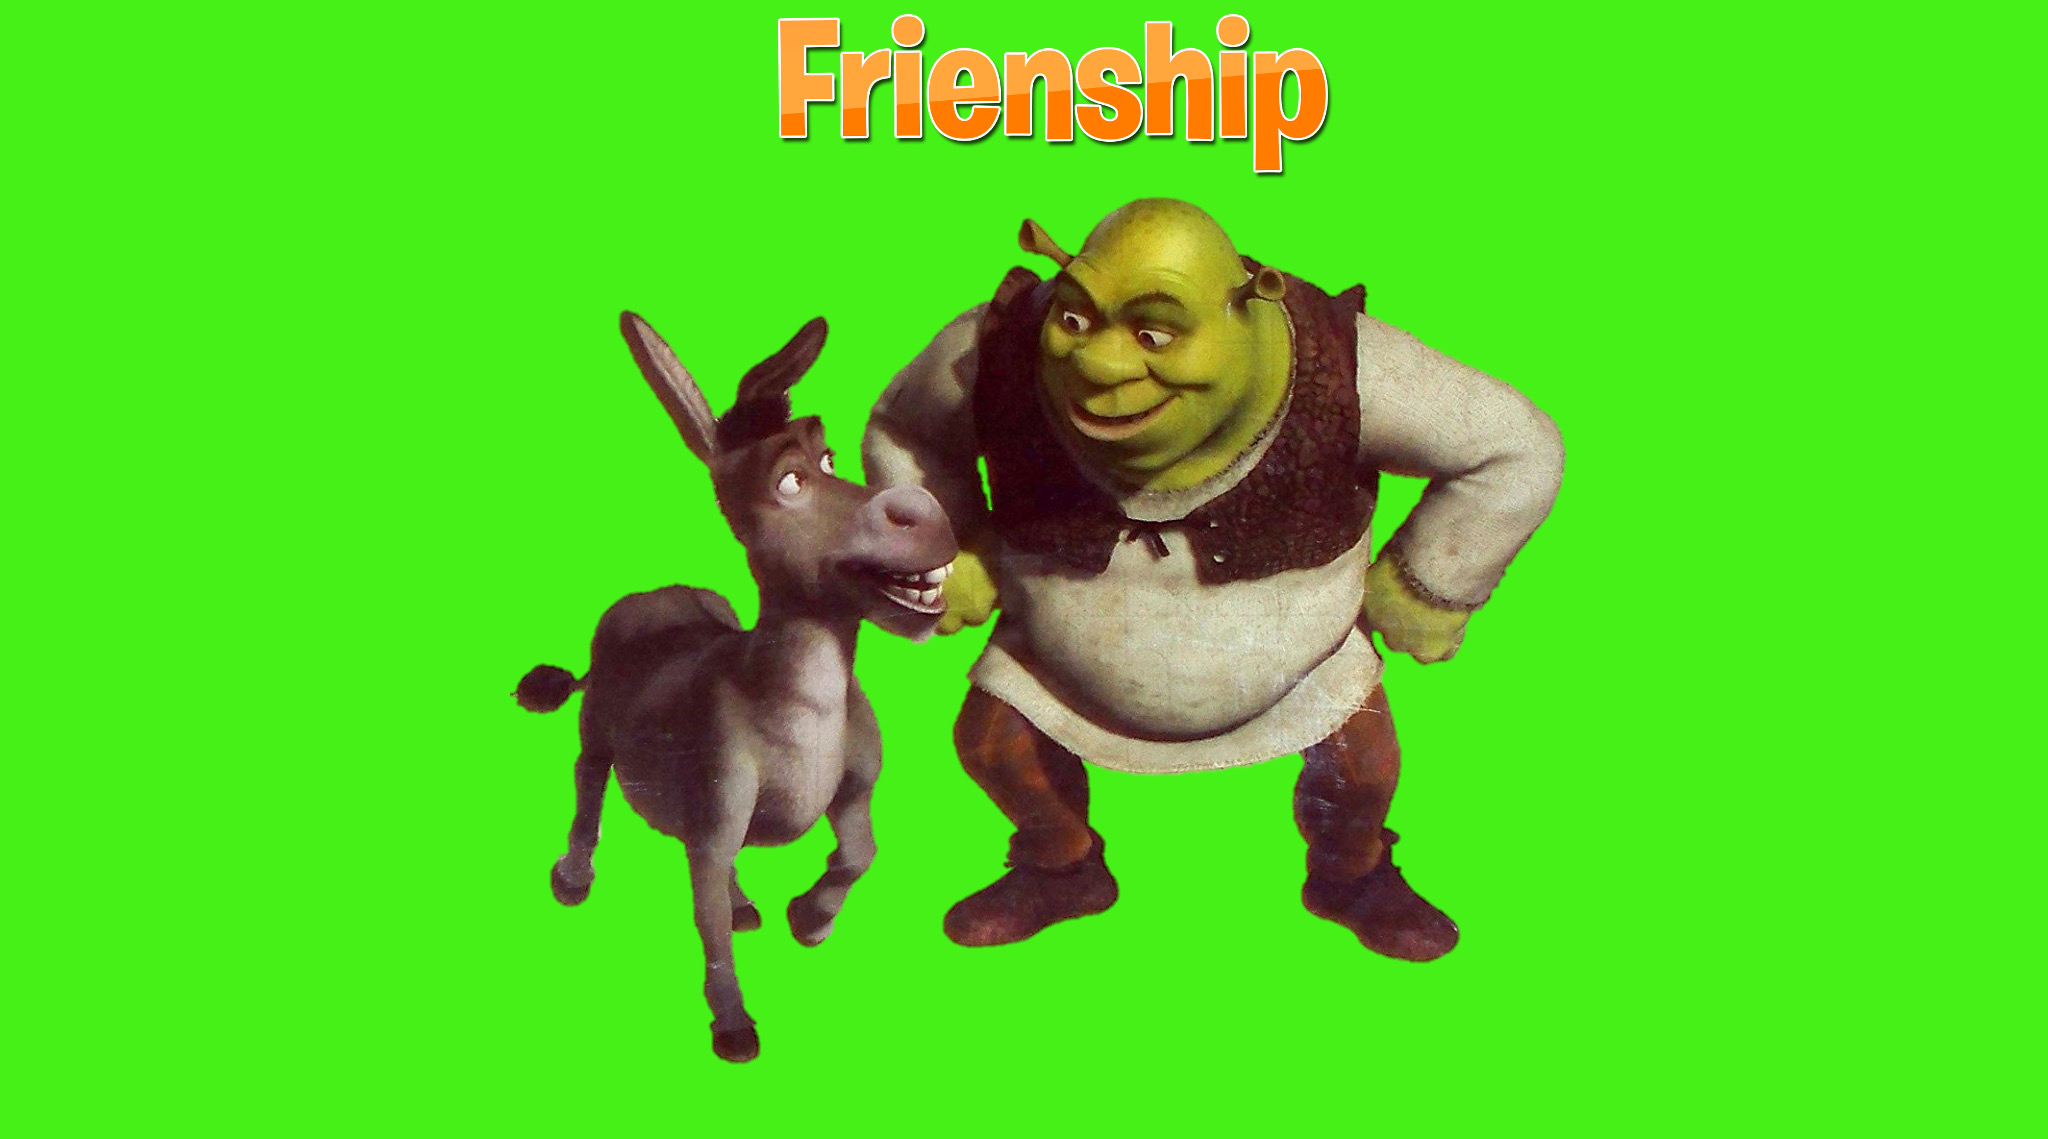 Shrek and Donkey PNG 10 by DarkMoonAnimation on DeviantArt